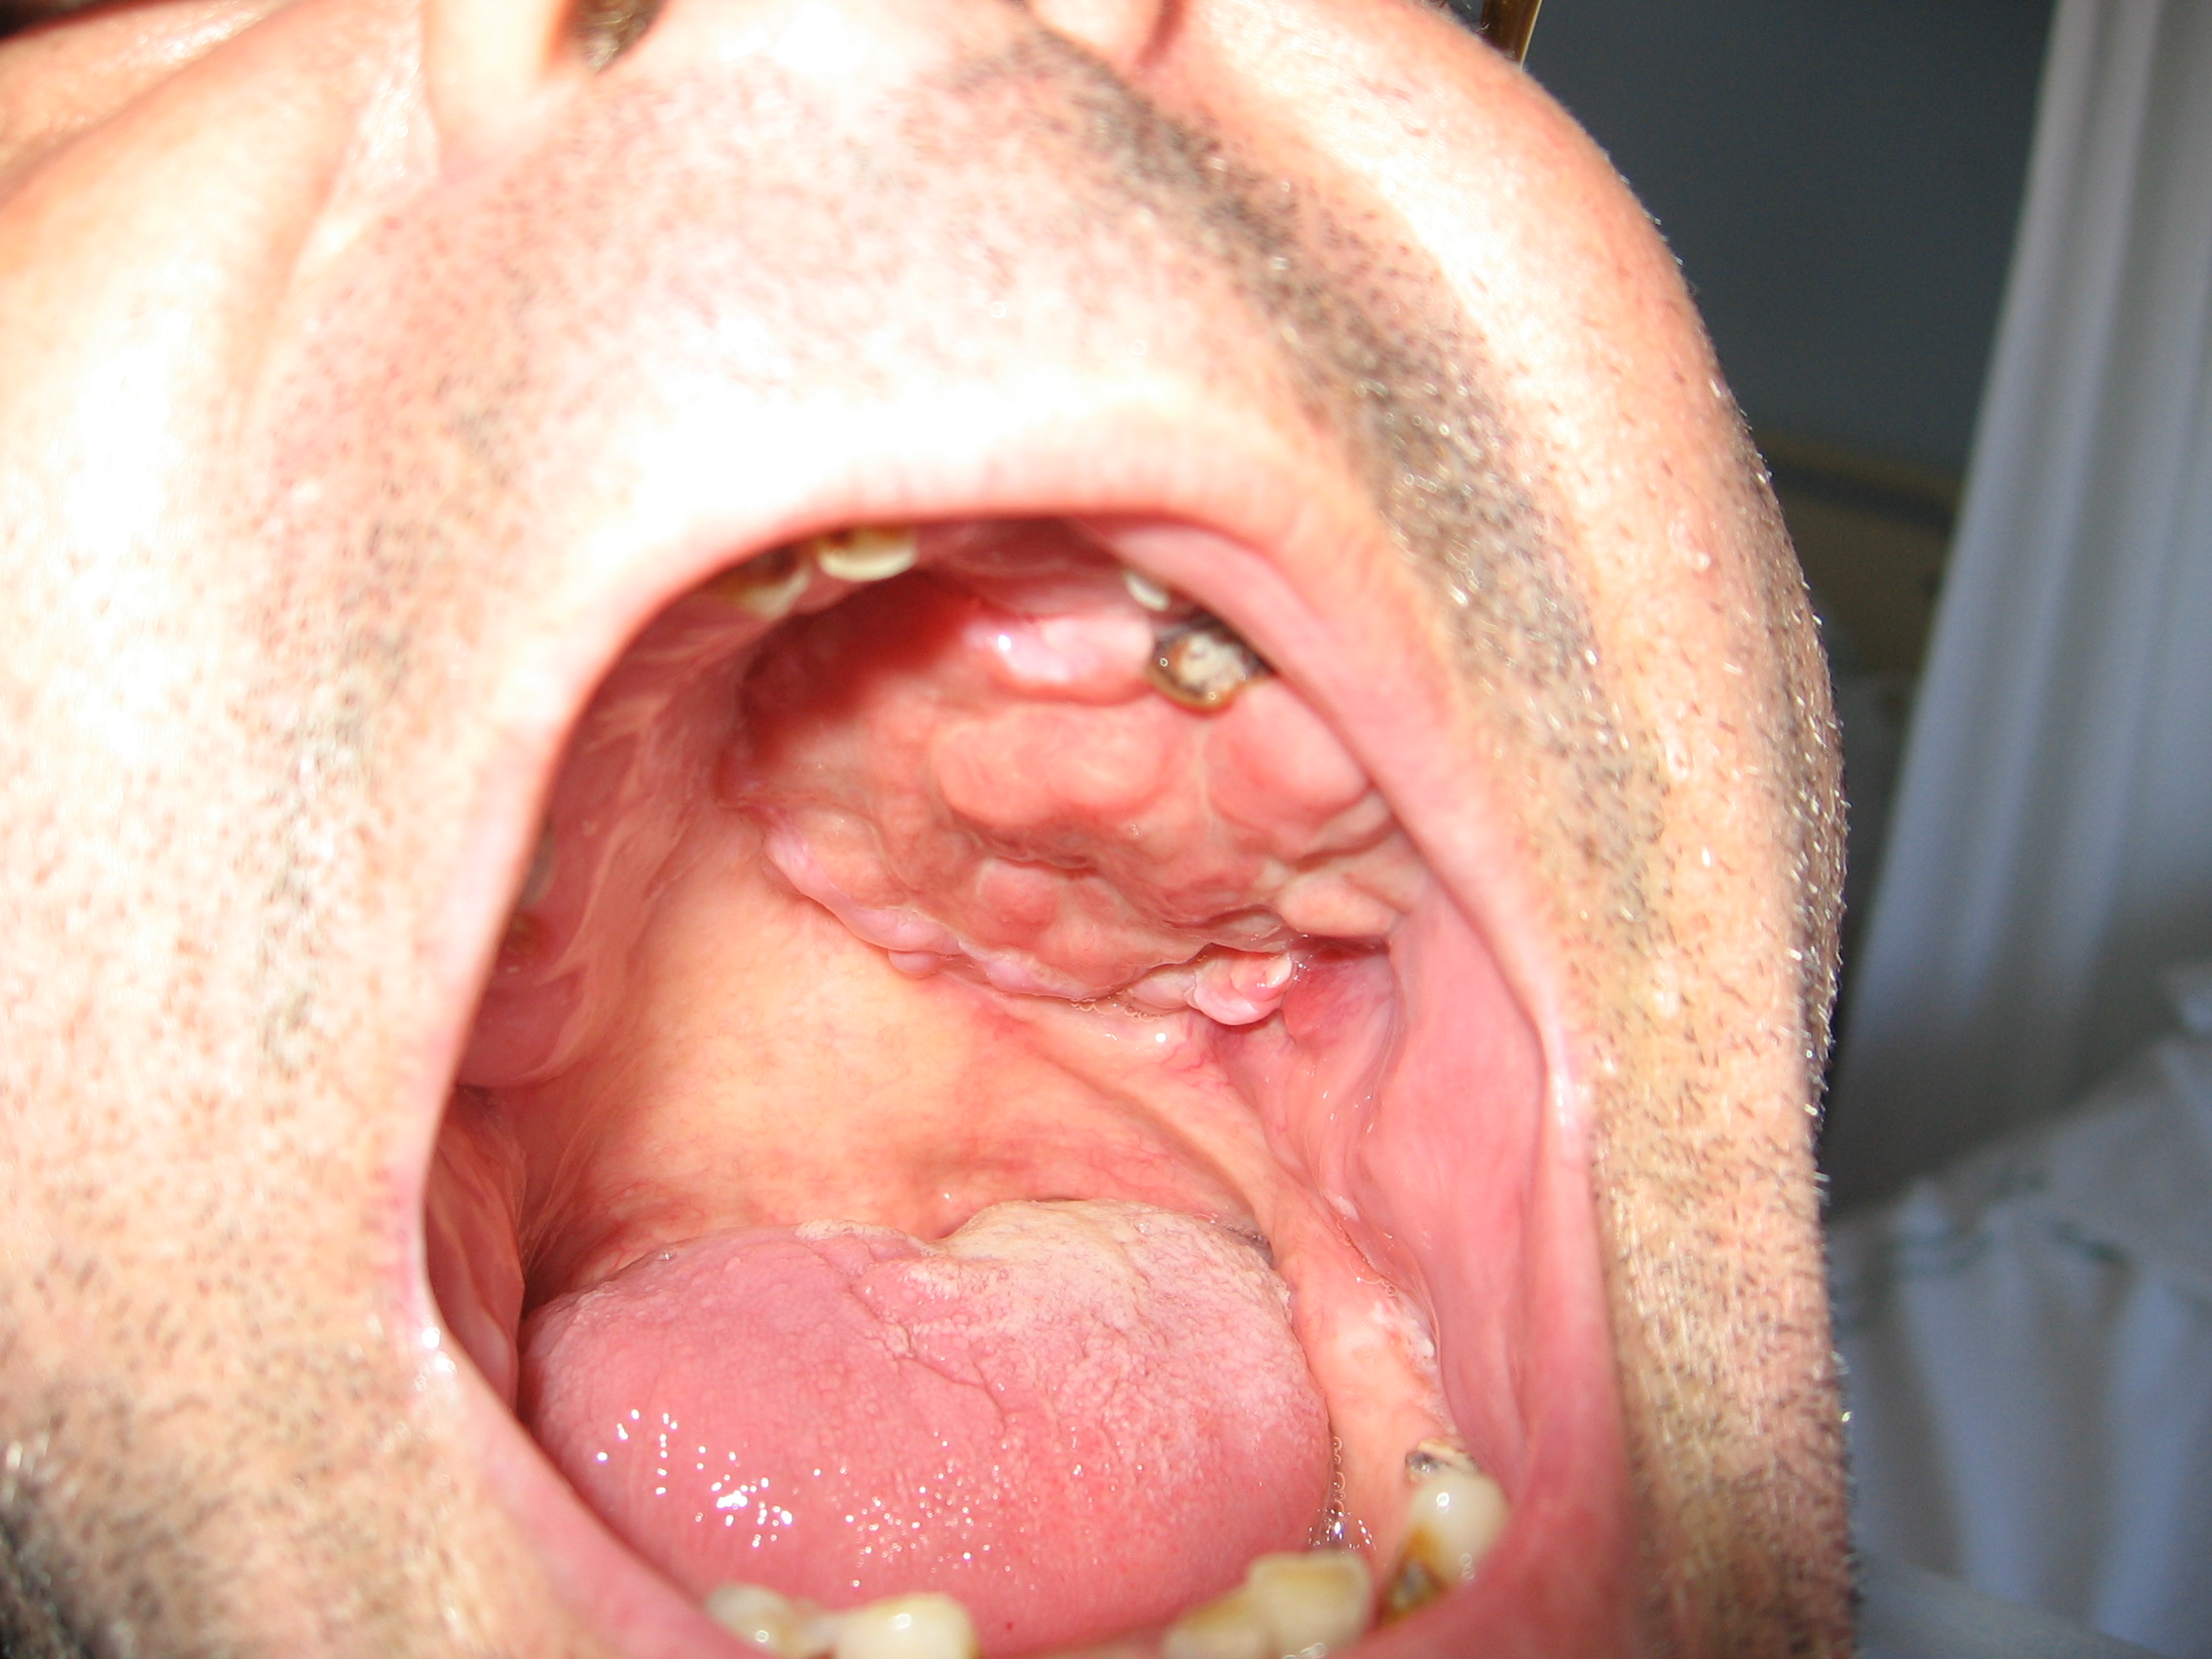 Linfoma plasmablástico. Cavidad oral